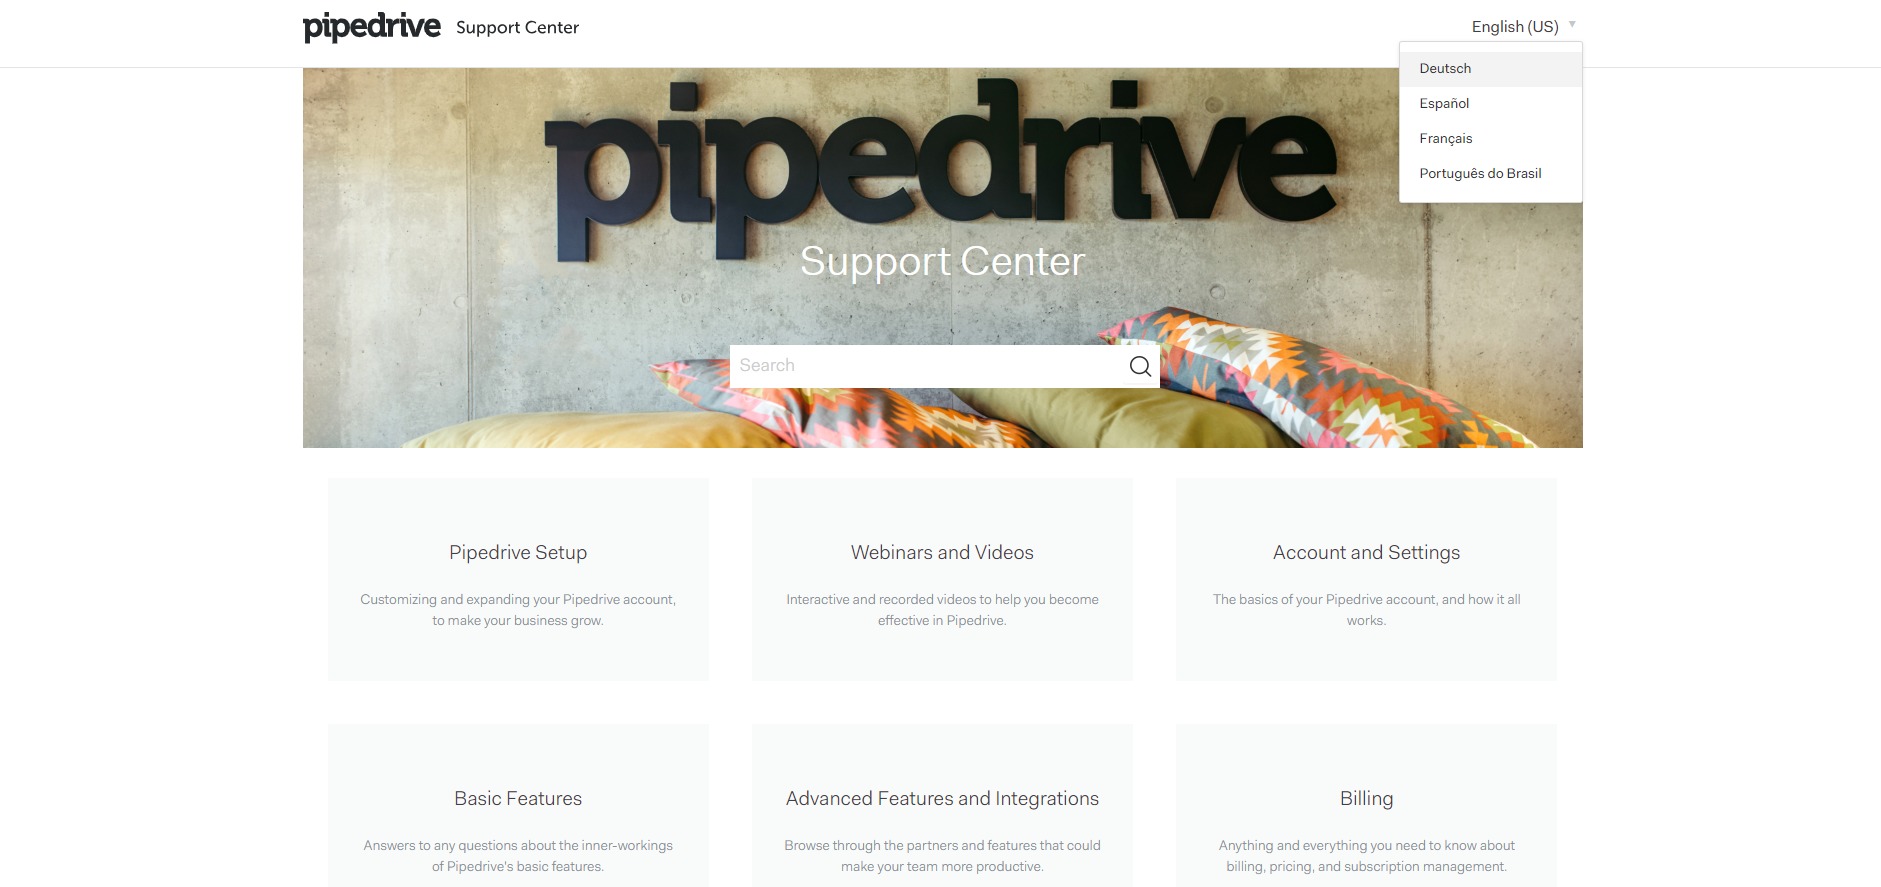 Pipedrive support center, eli tukikeskus, ei ole saatavilla suomeksi.